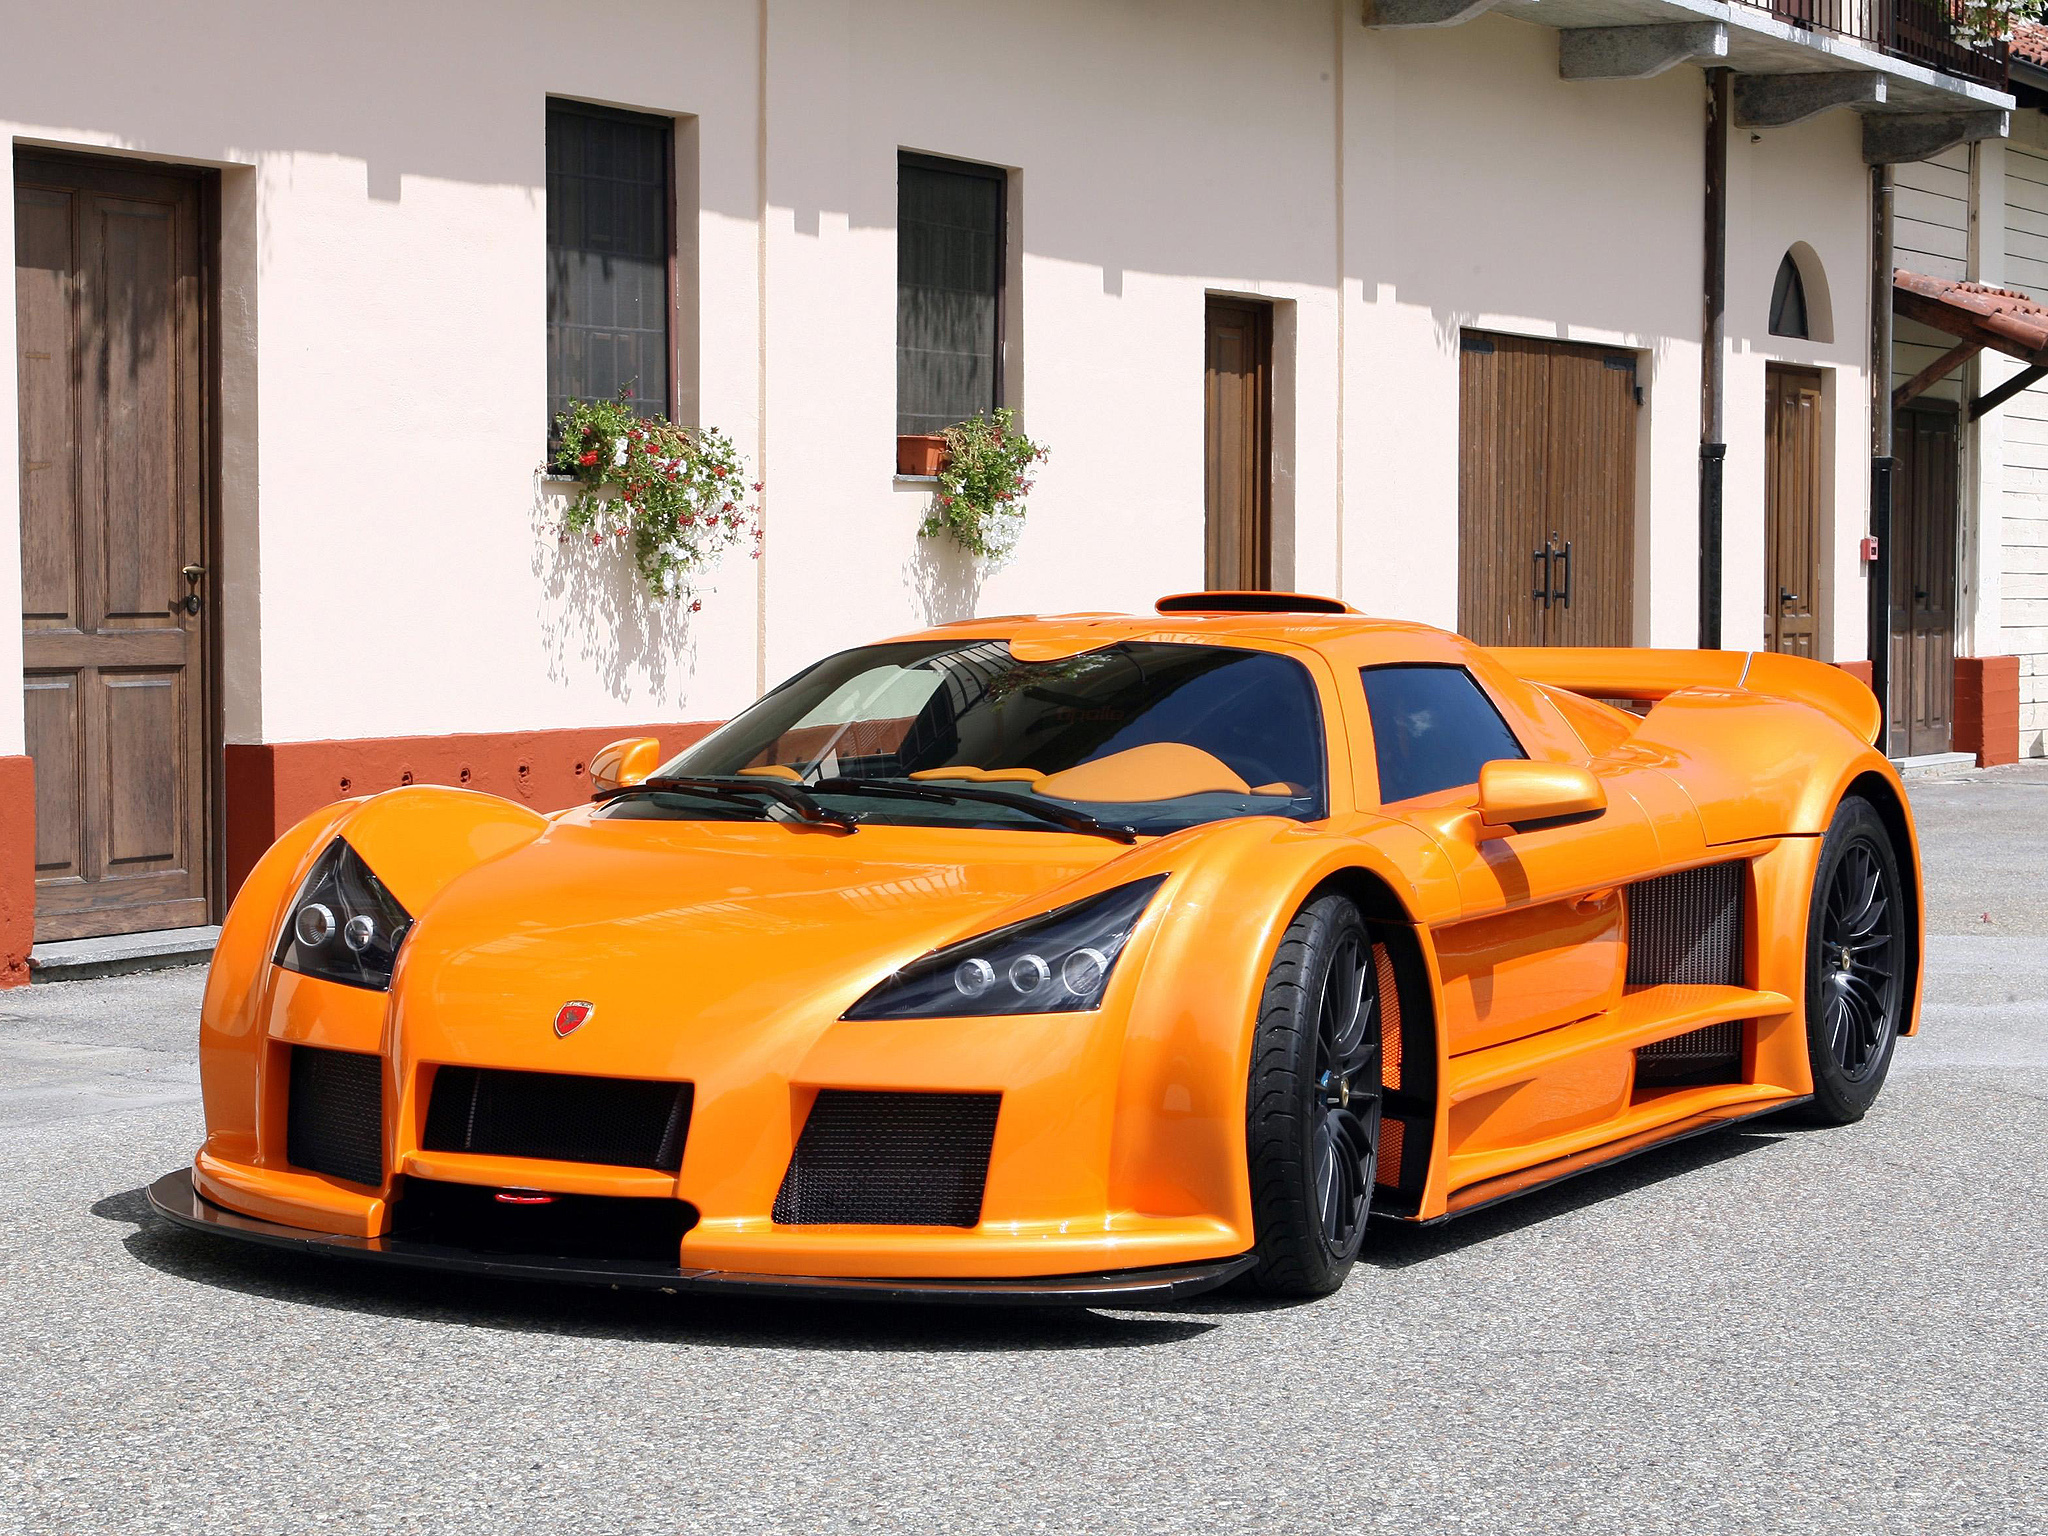 Сайт про автомобили. Ламборджини Галлардо оранжевый. Классные машины. Крутые авто. Крутые машины настоящие.